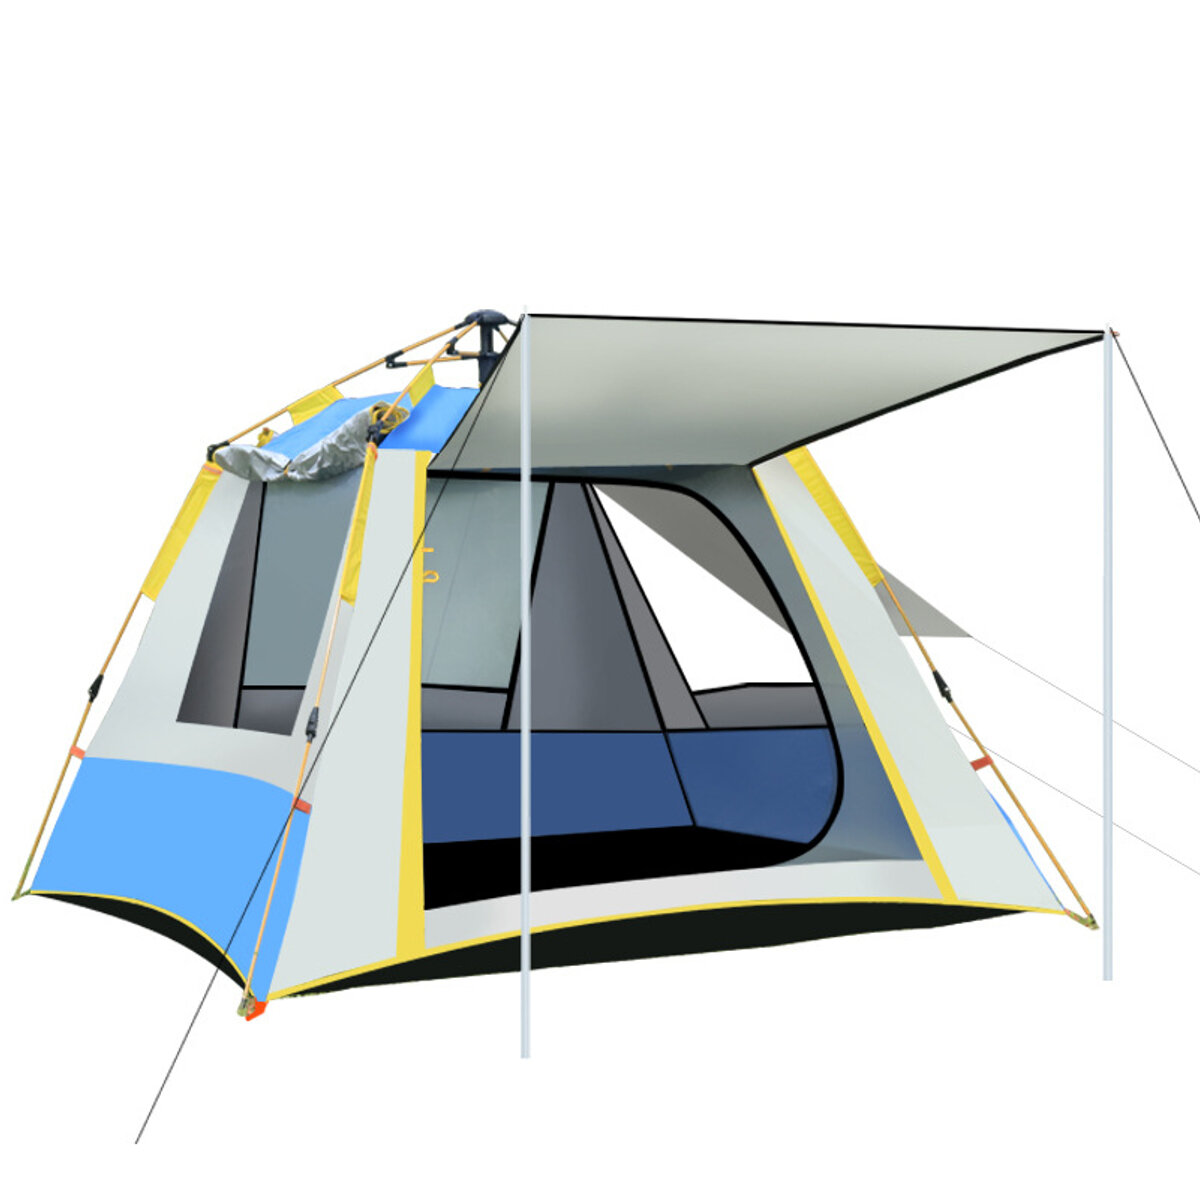 Automatische tent voor 2-3 personen met 3 ramen, UV-bestendig, waterdicht en winddicht, ideaal voor gezinscamping in de buitenlucht.